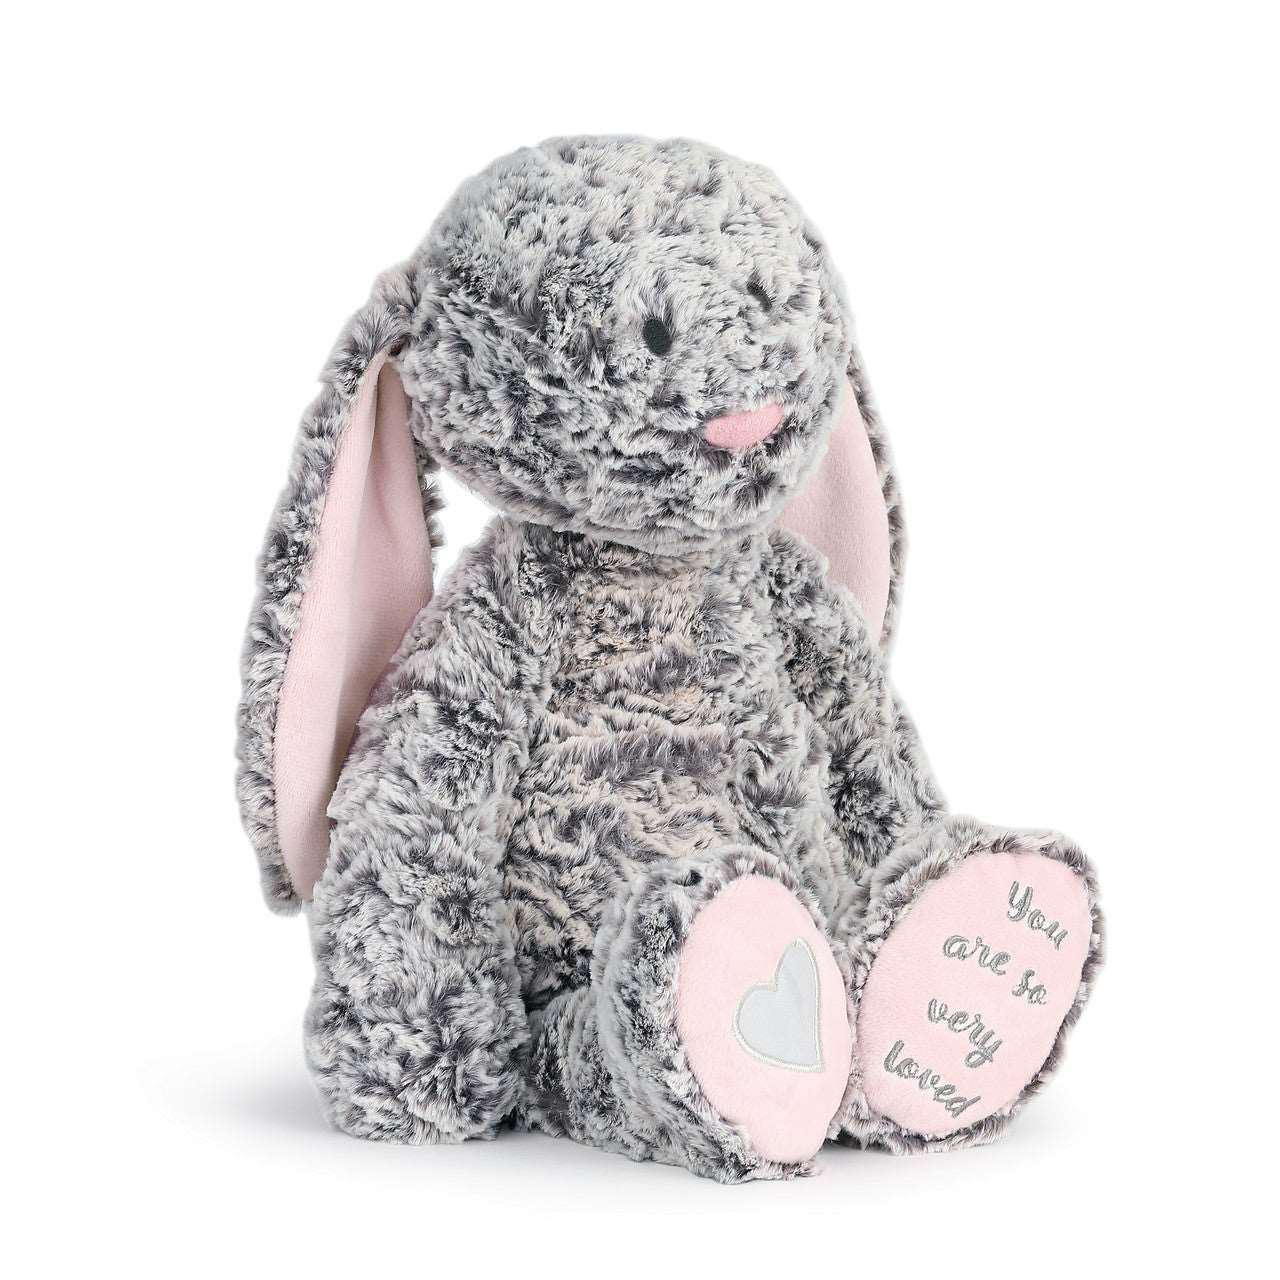 Isabella Bunny - So & Sew Boutique